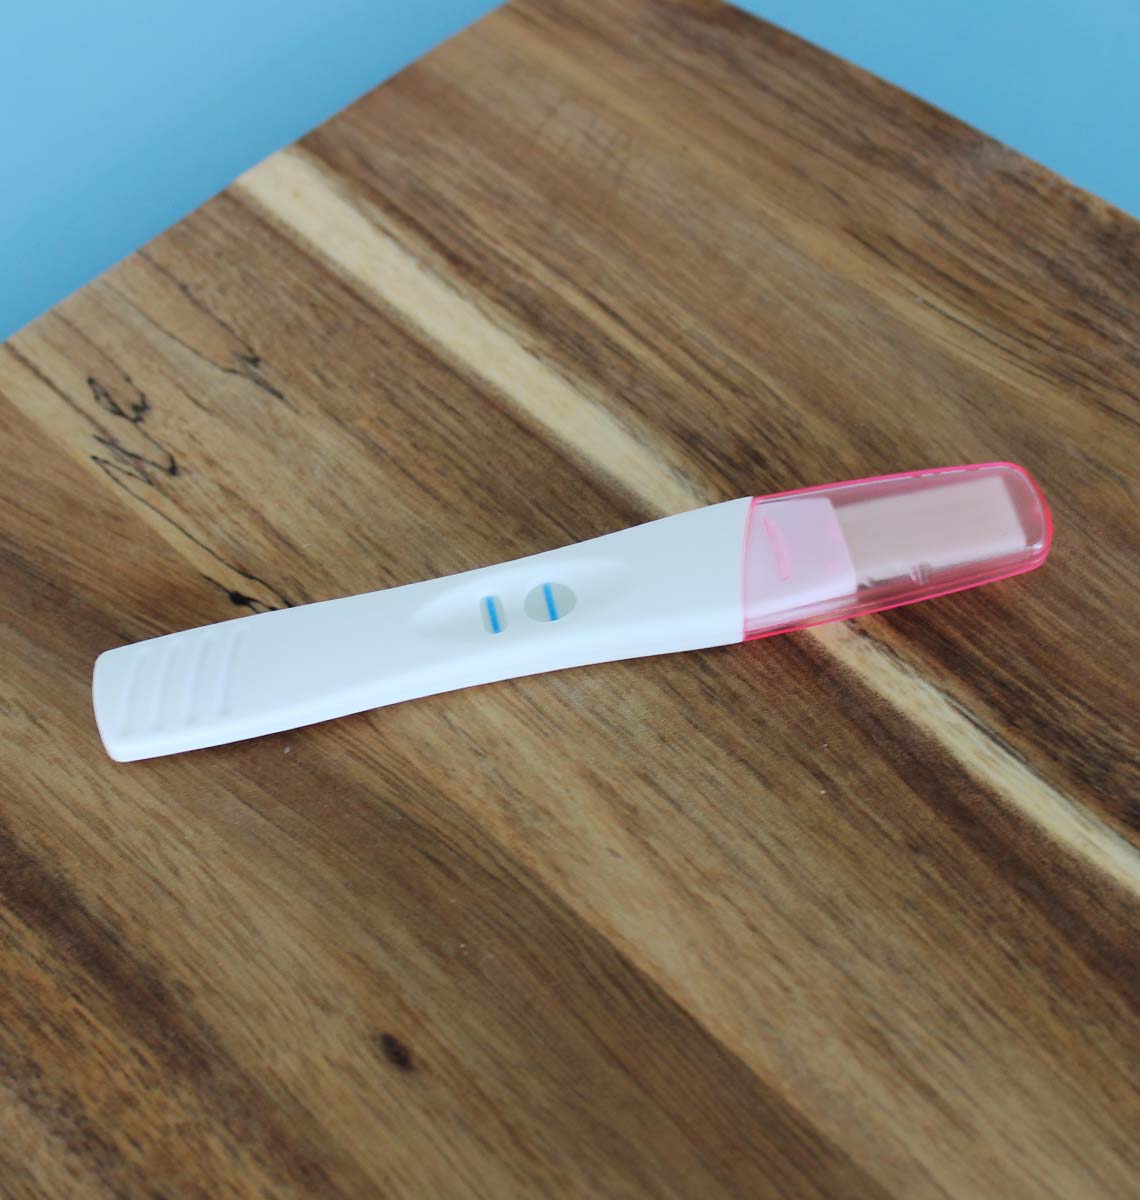 antydning identifikation prøve Gravid? Ikke gravid? Få svar med Apotekets graviditetstest